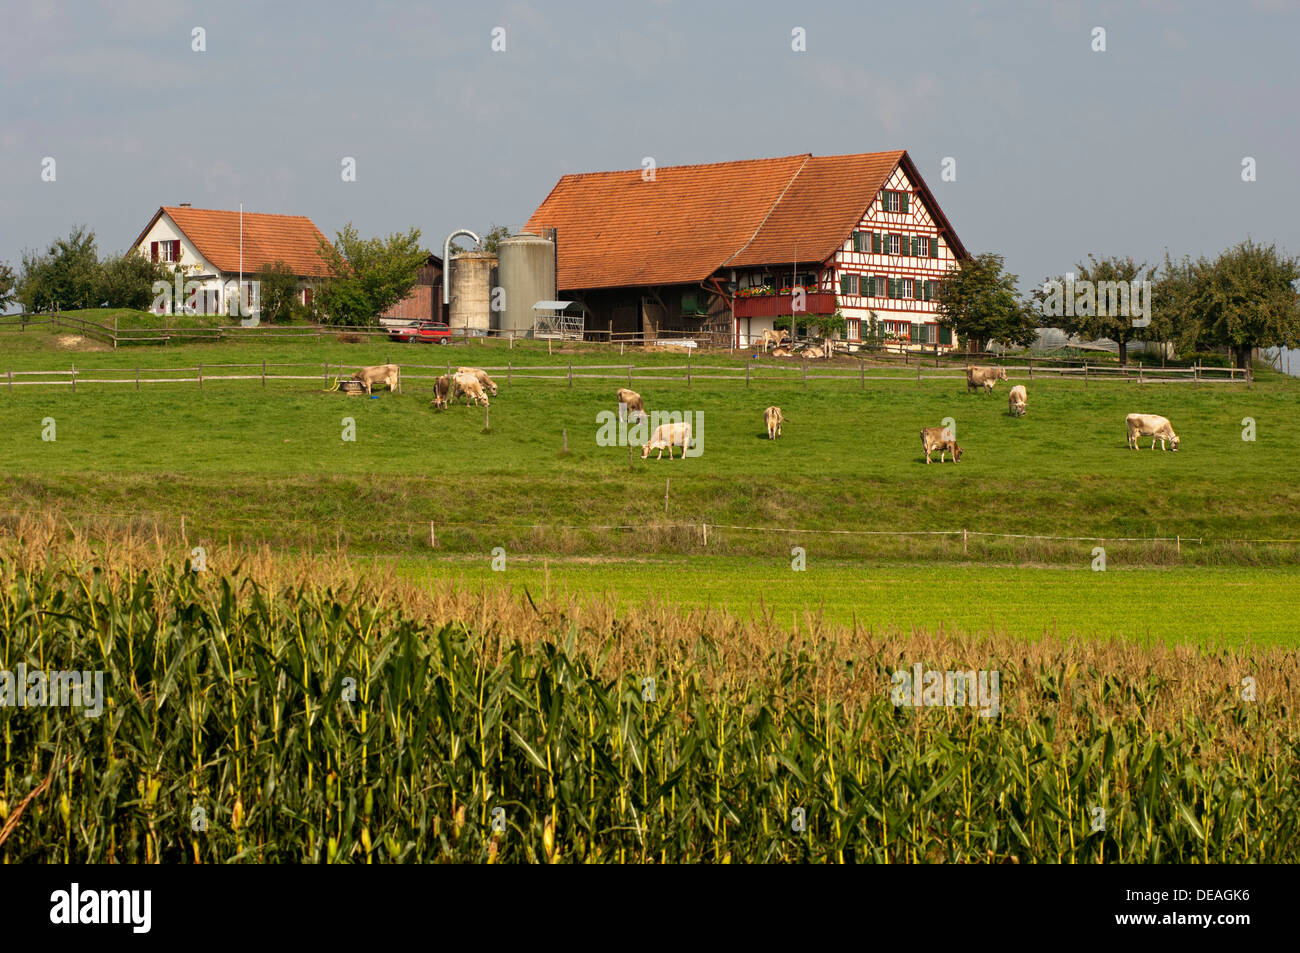 Bauernhof mit Kühen auf der Weide im Mittelland oder Plateau Suisse, Kanton  Zürich, Schweiz Stockfotografie - Alamy